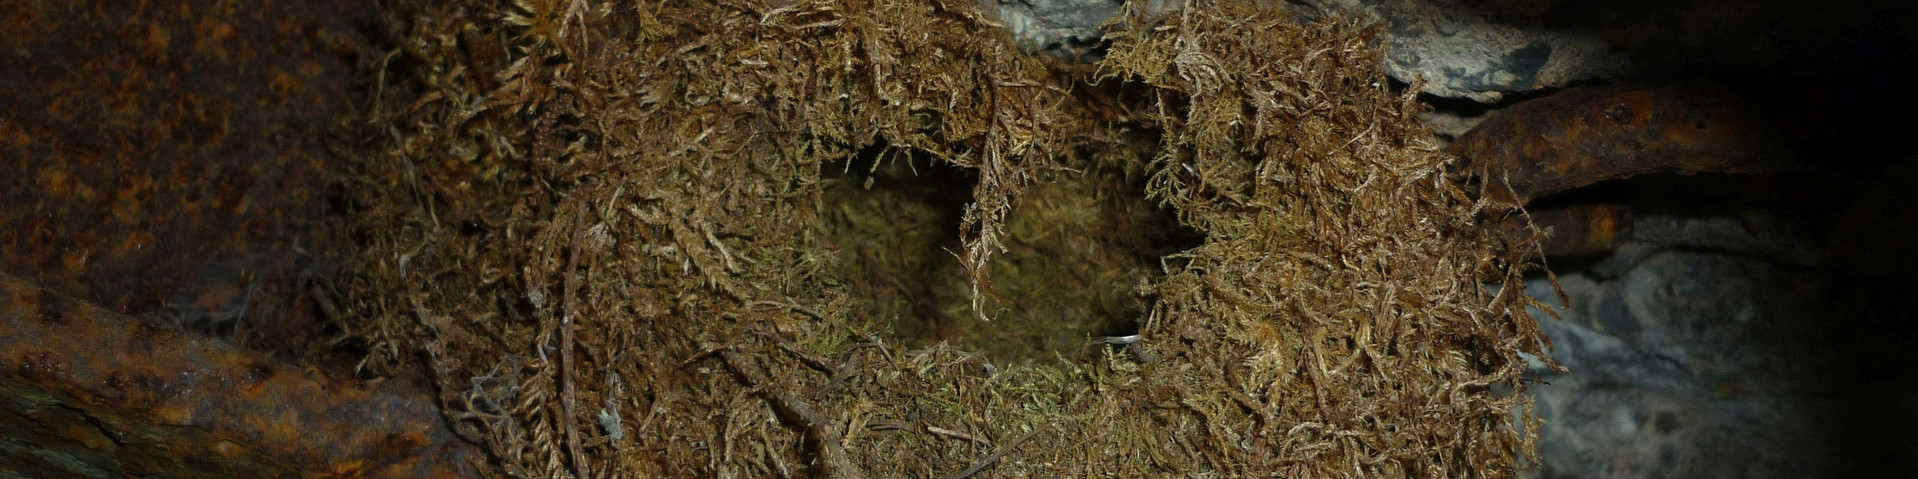 Nest eines Zaunkönigs in einem Bunker.